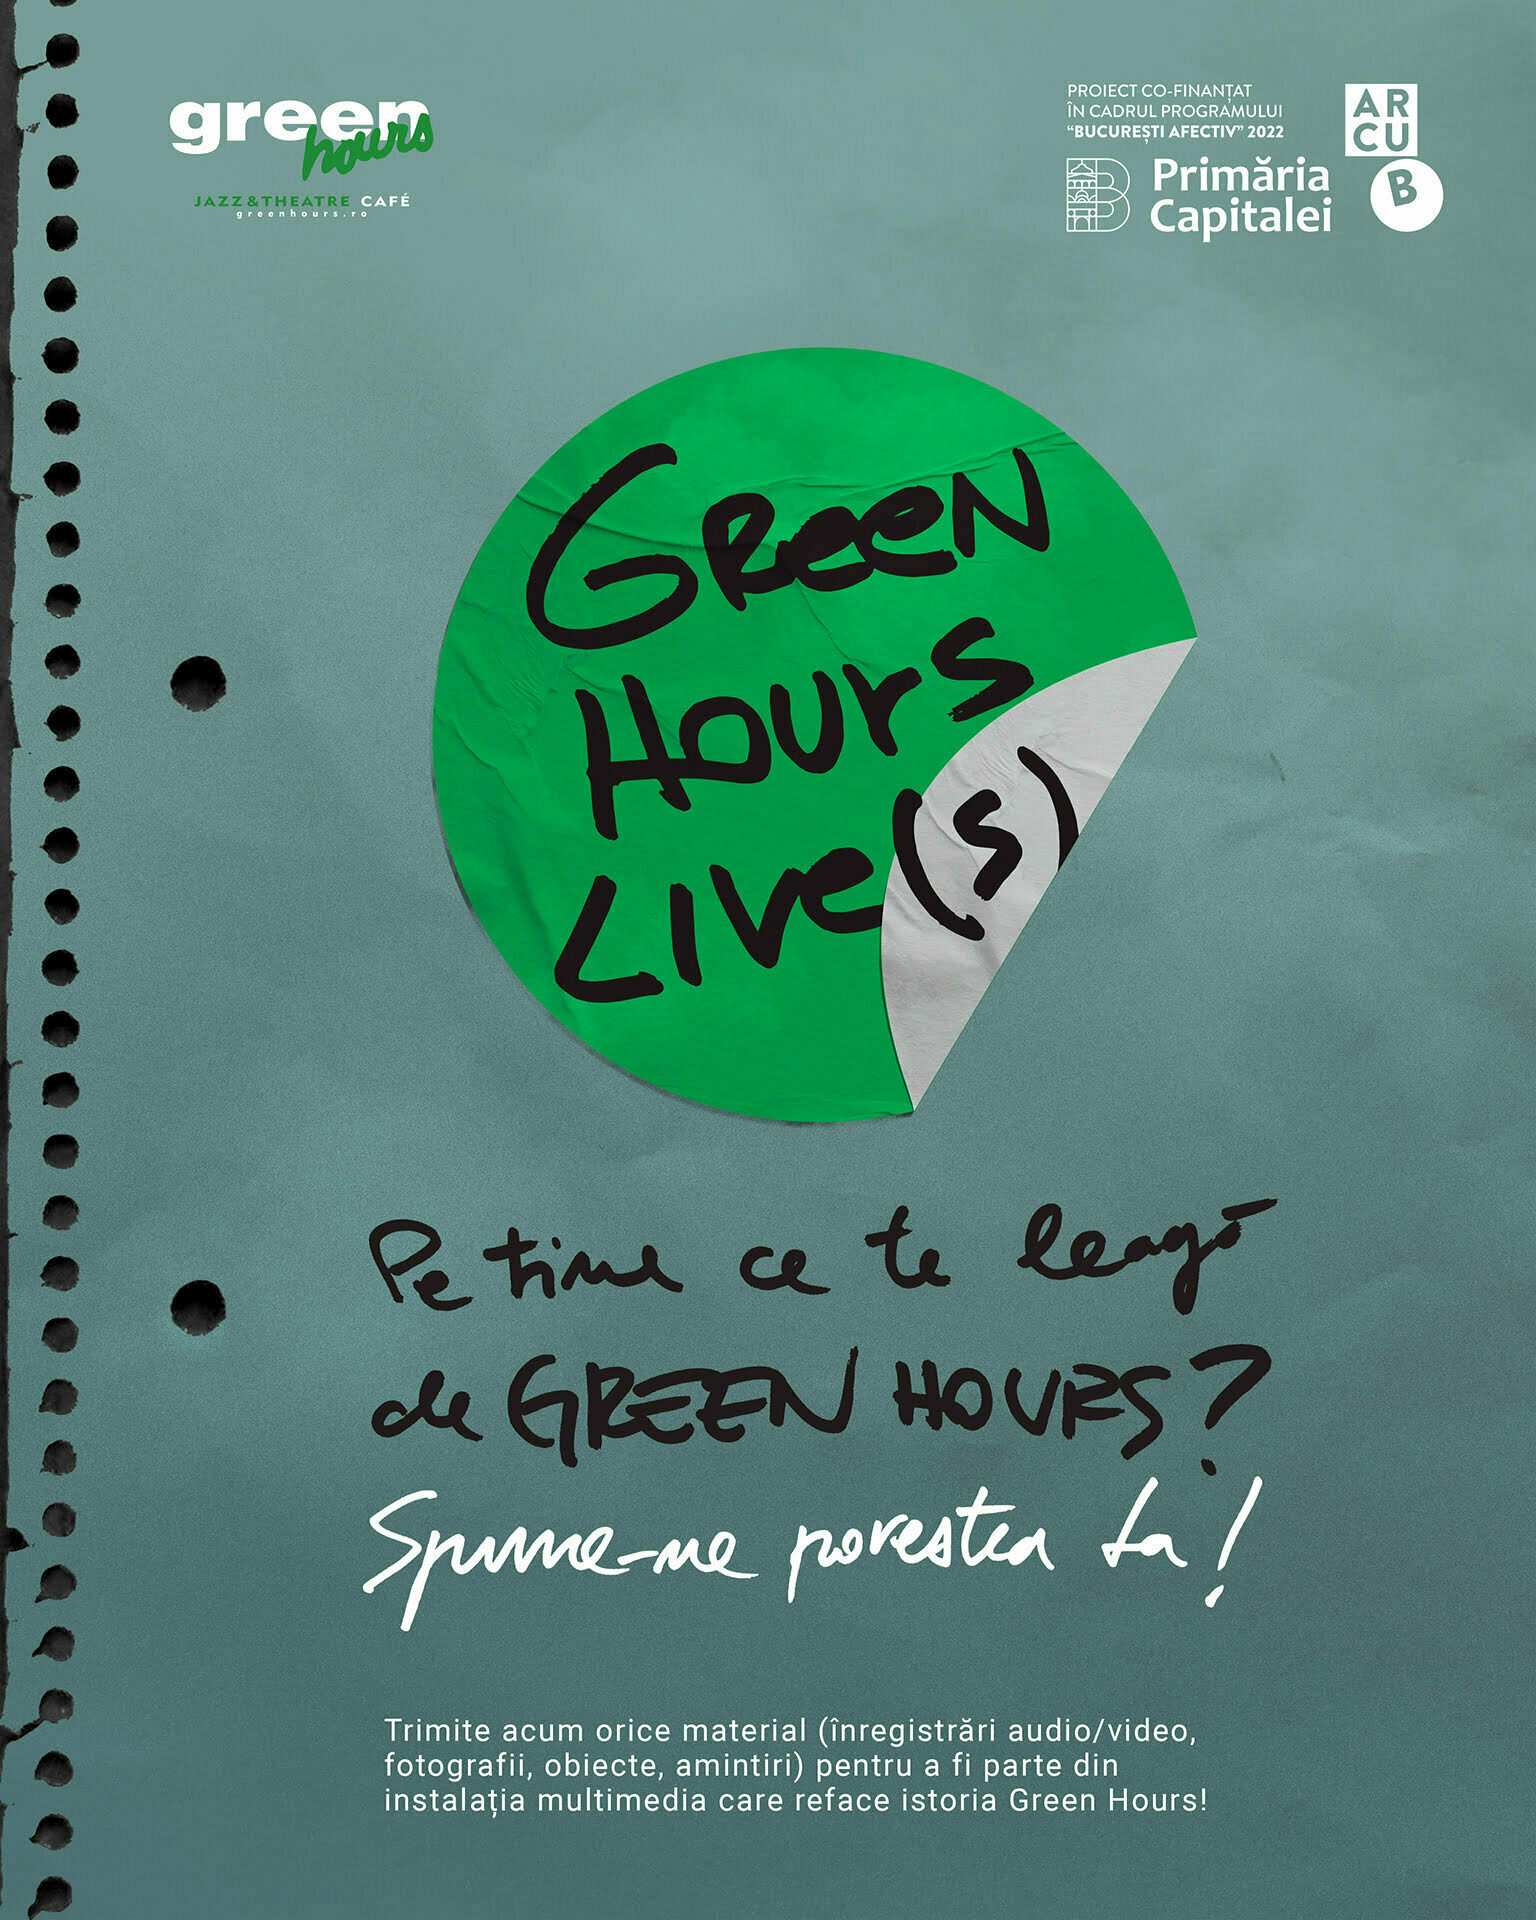 GREEN HOURS LIVE(S) caută povești și istorii personale legate de Green Hours, pe care le va transforma într-o instalație multimedia.